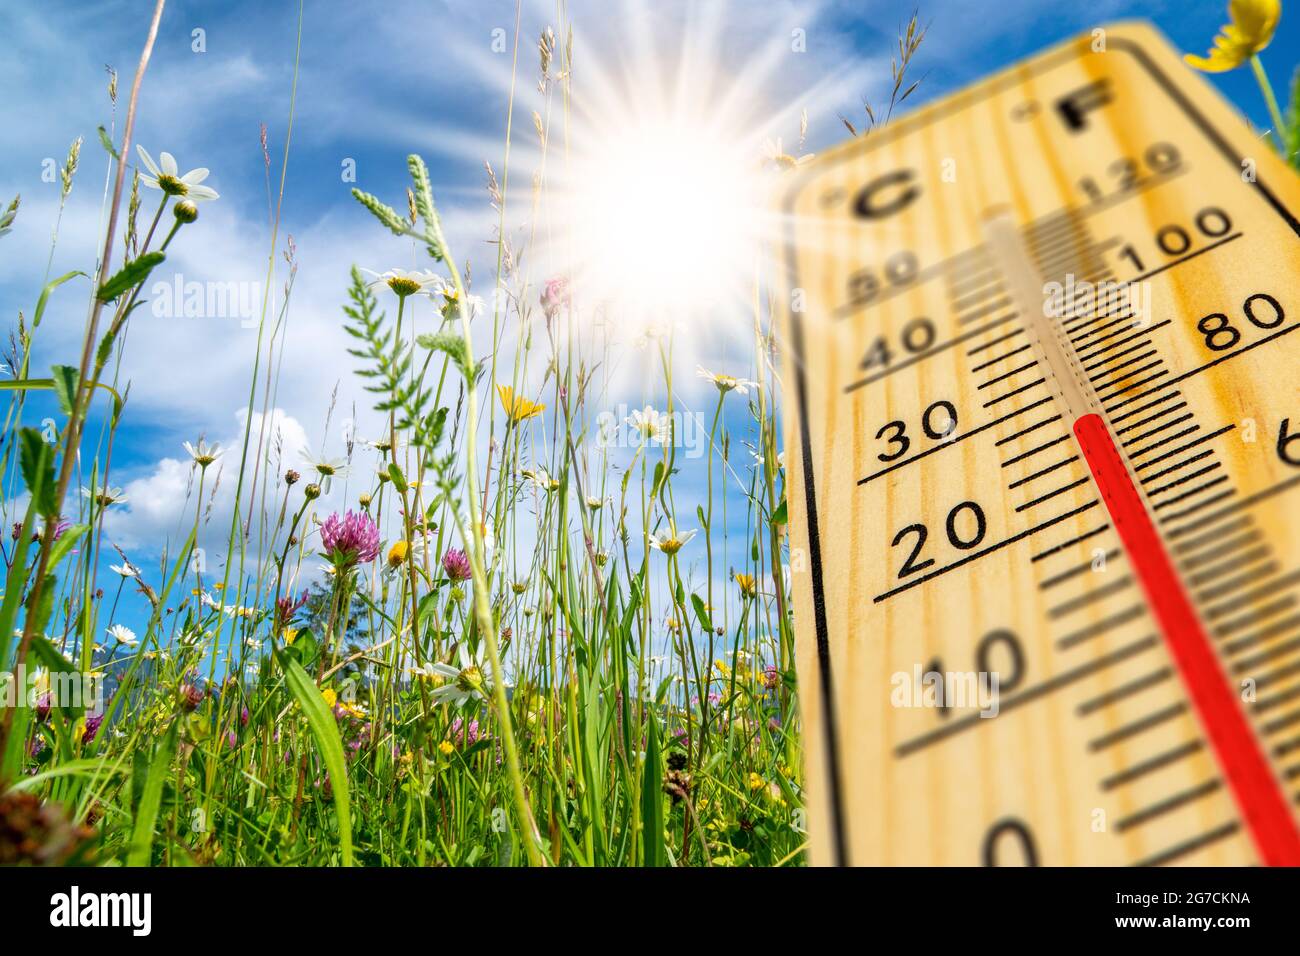 riscaldare in estate con temperatura elevata a termometro Foto Stock